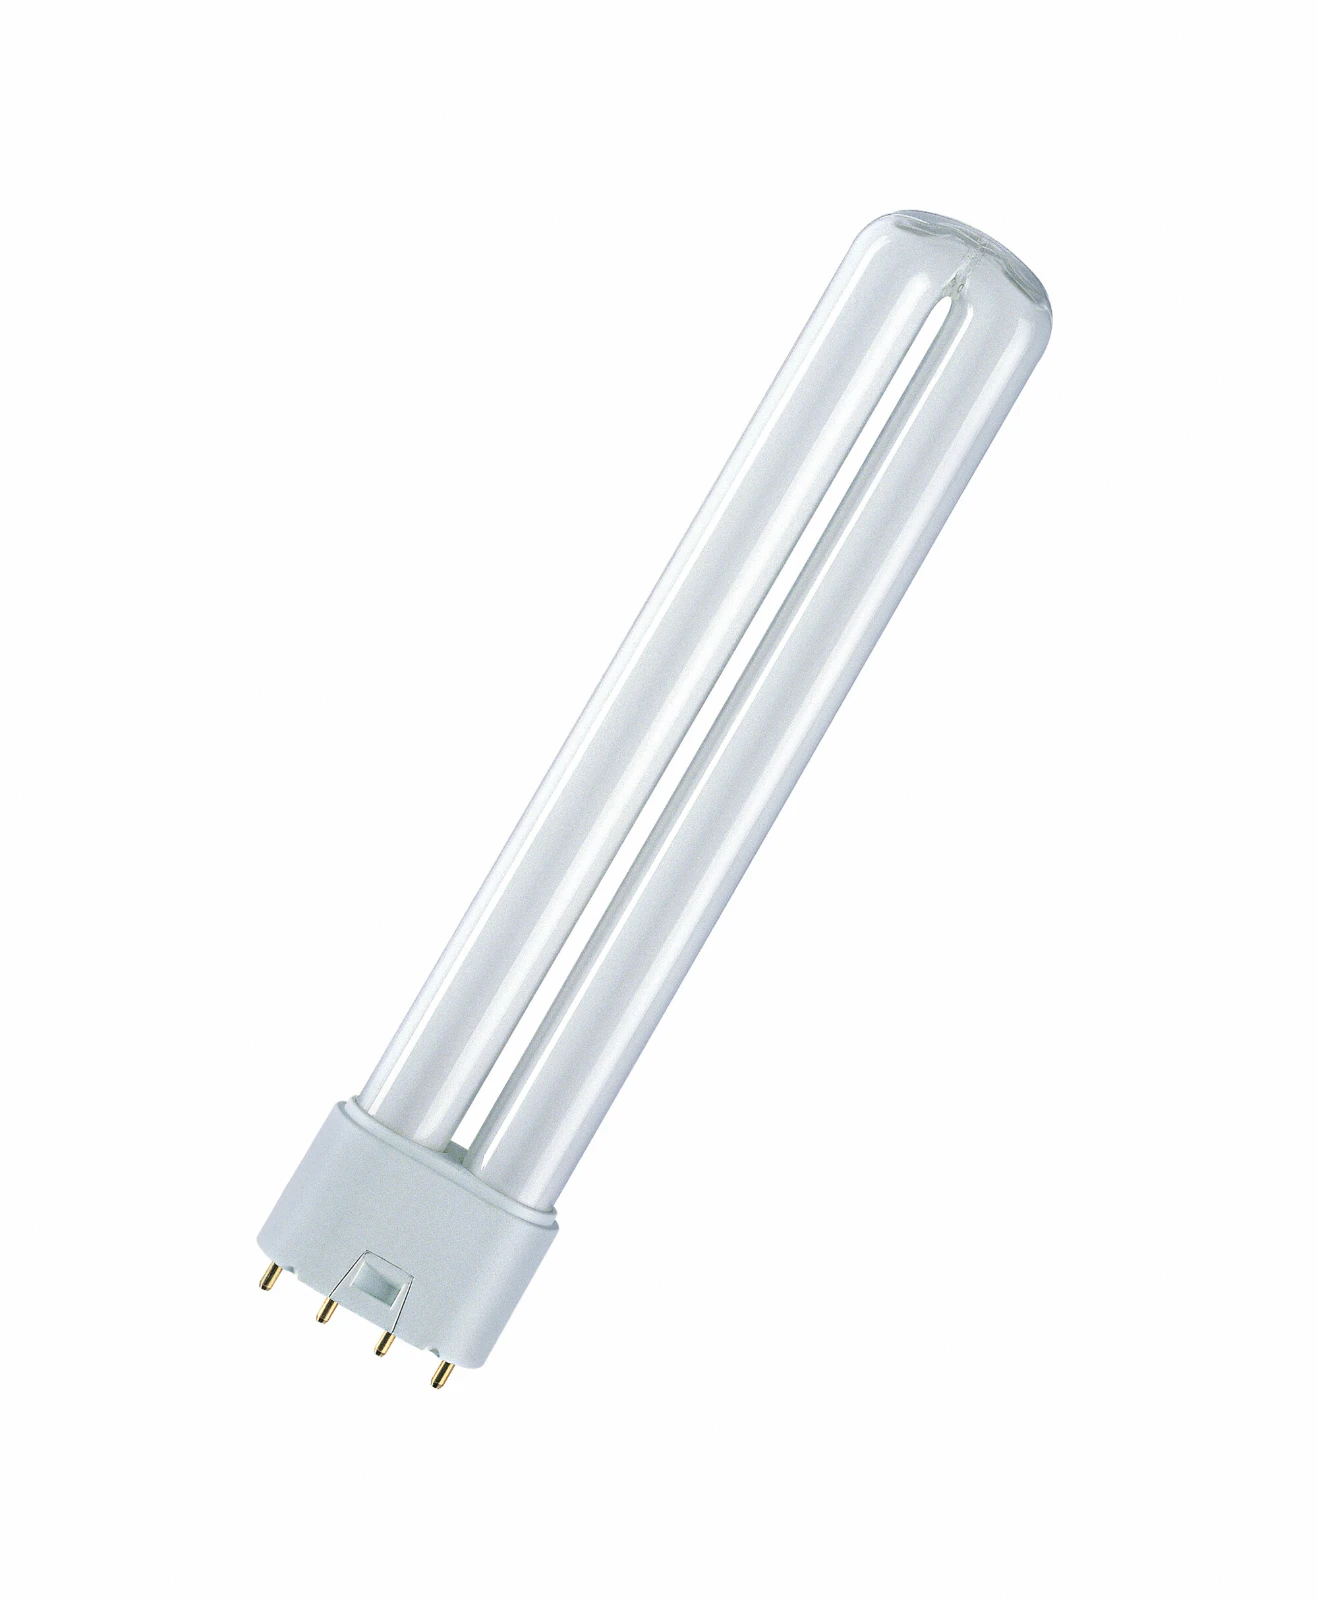 Osram Compact fluorescentielamp zonder geïntegreerd voorschakelapparaat DULUX L 55W/830 2G11 FS1